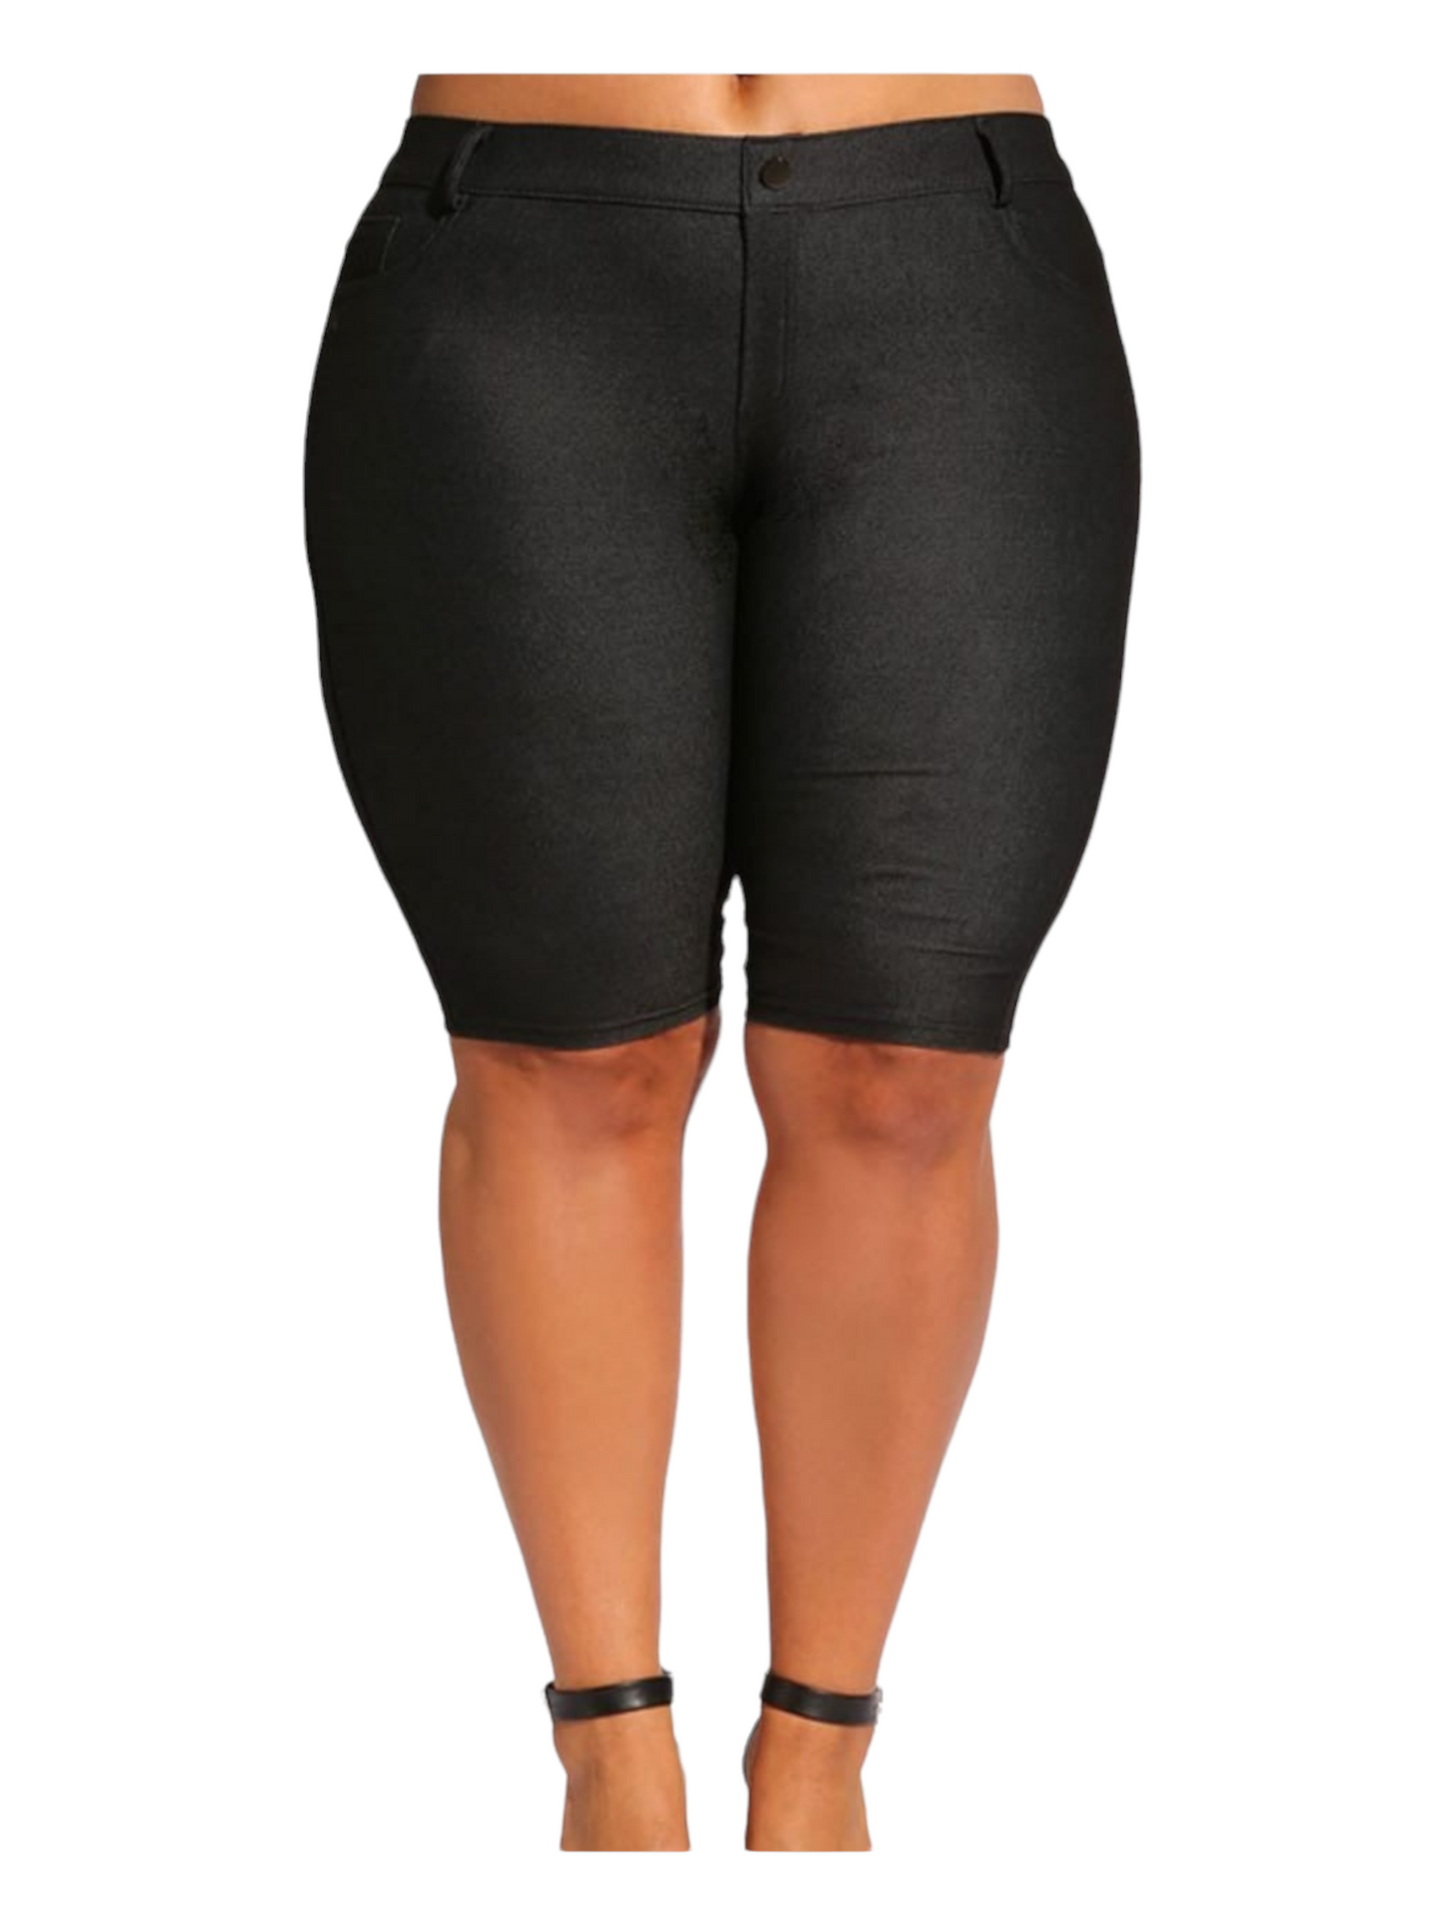 Bermuda Pant - Black Regular Size